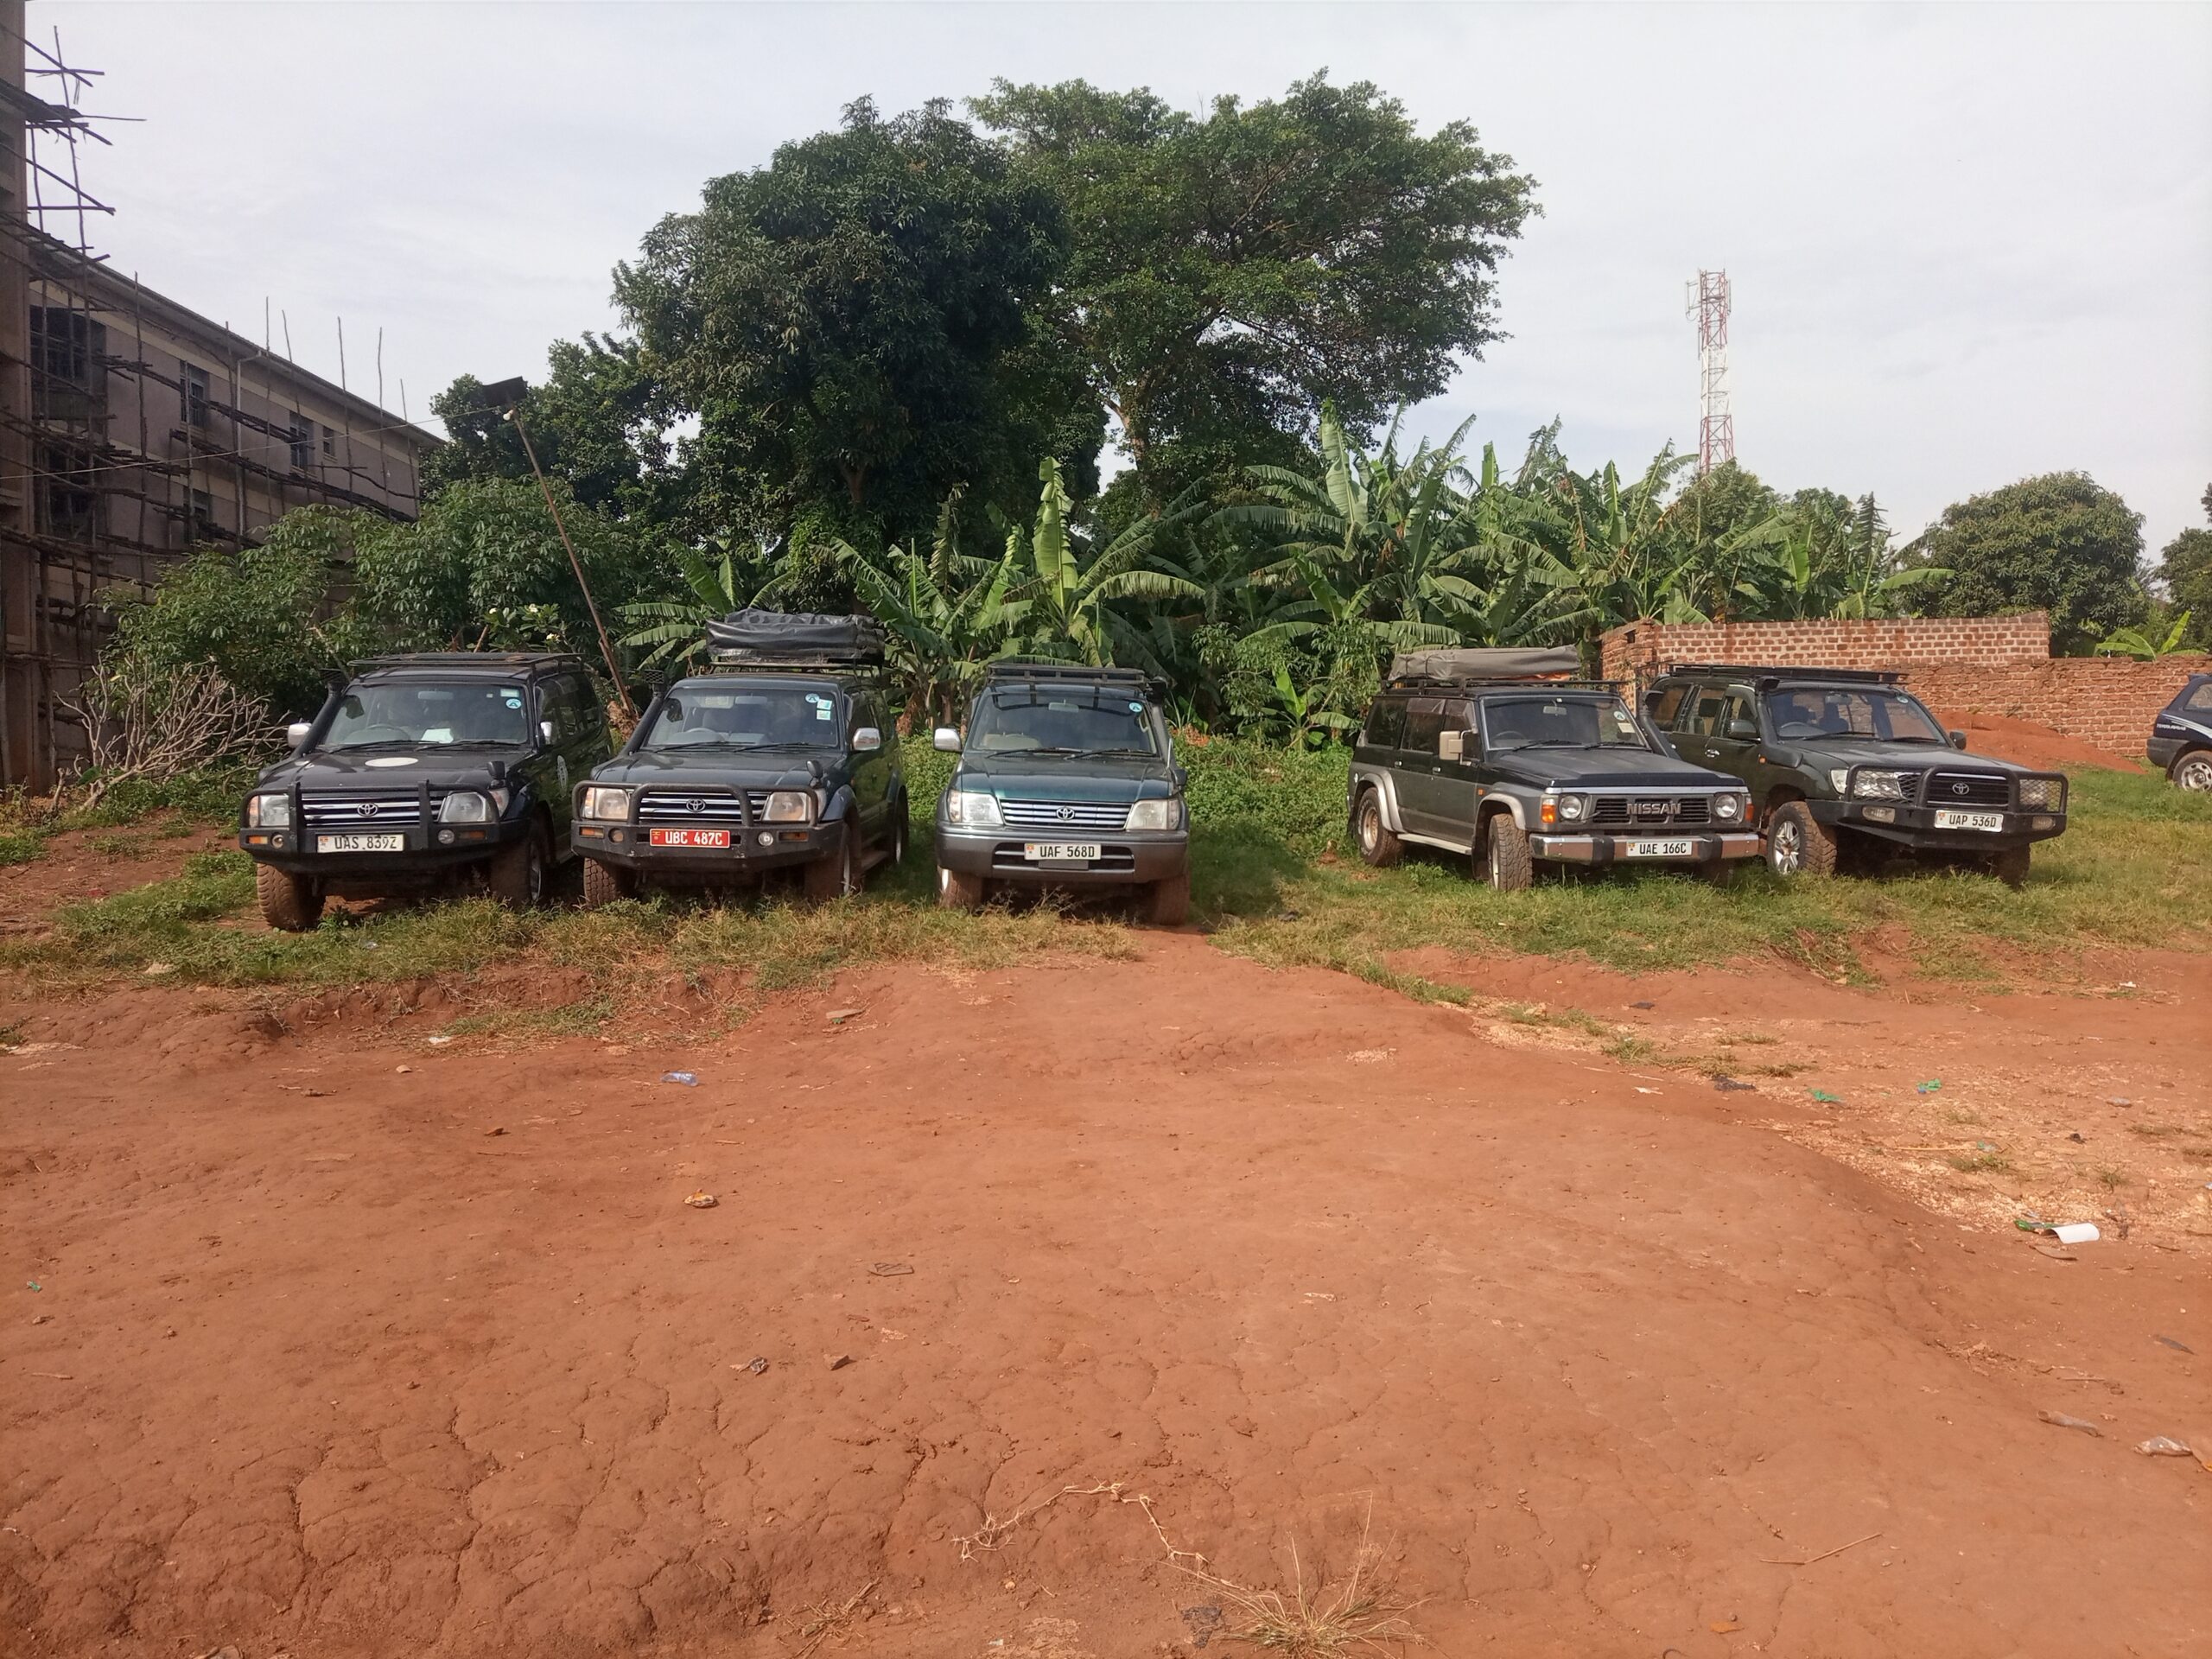 Uganda safari vehicles